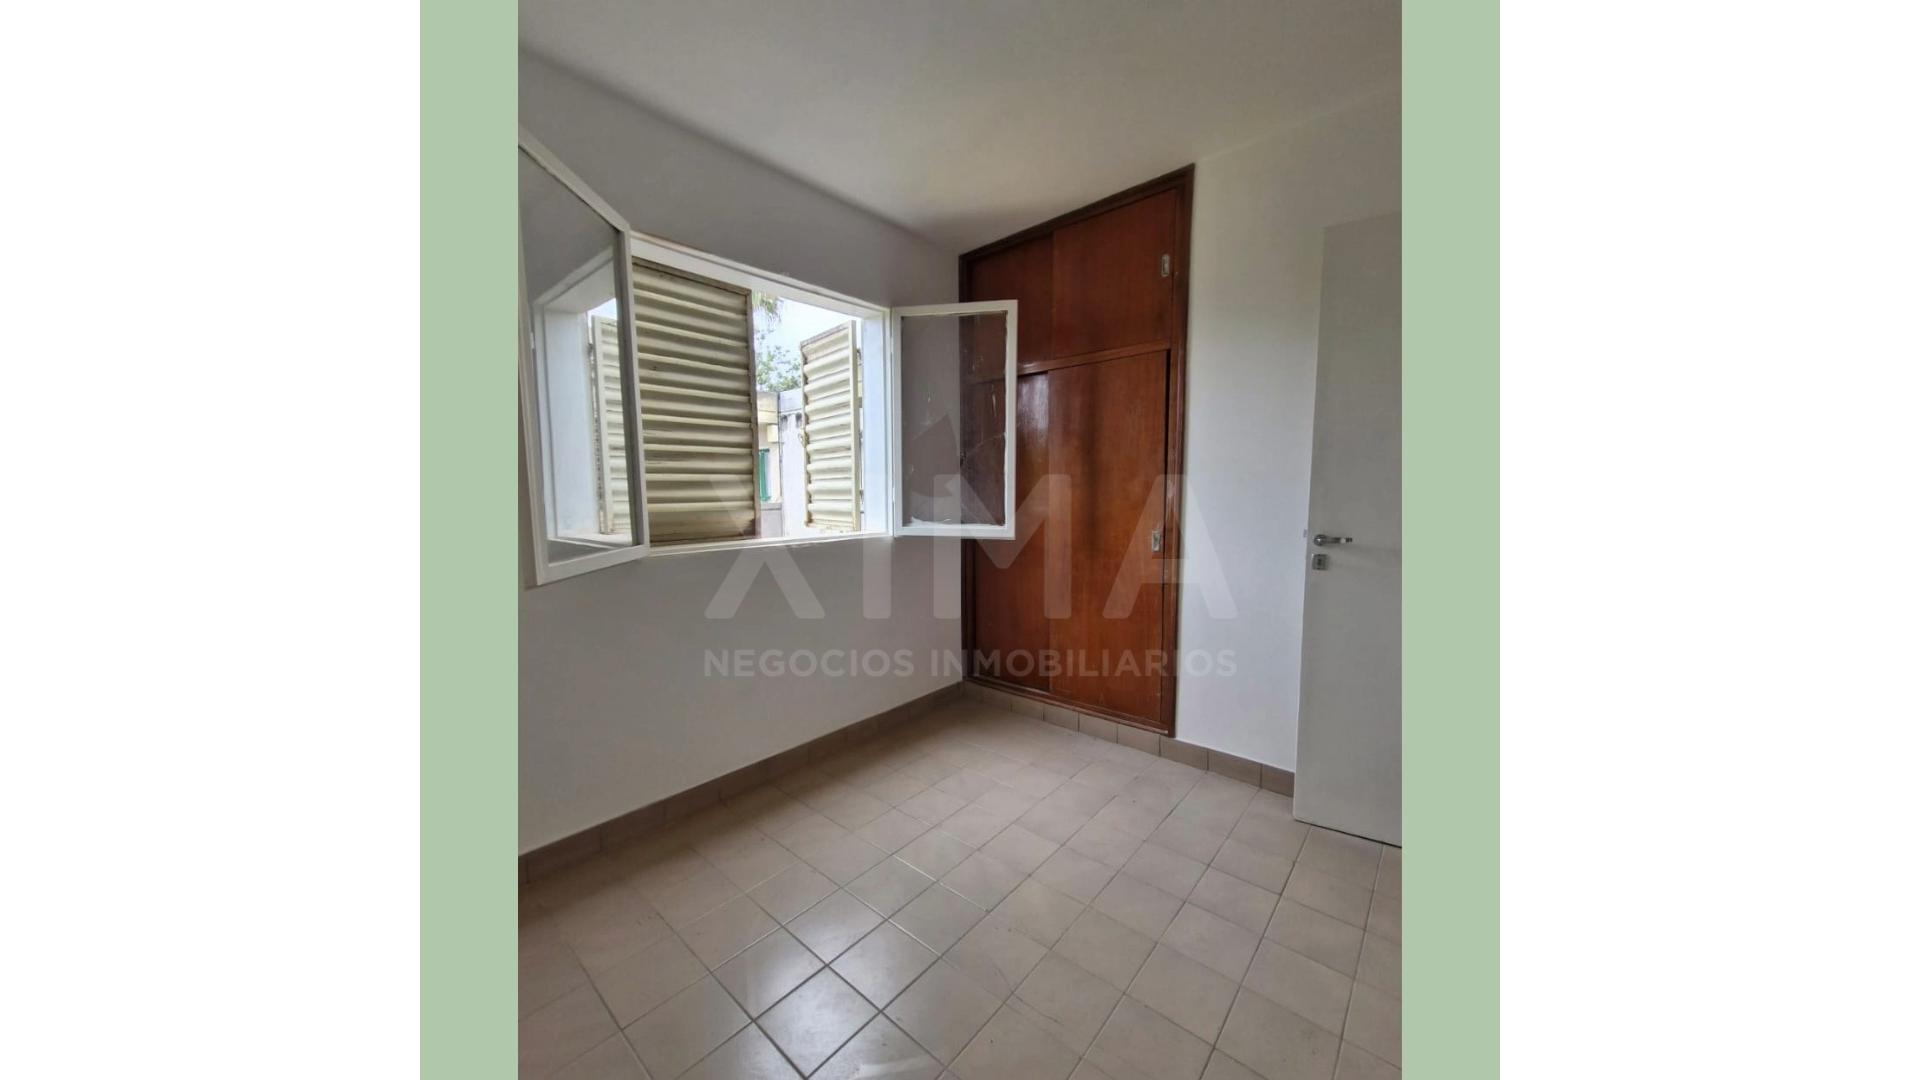 #5090266 | Sale | Apartment | Salta (XIMA NEGOCIOS INMOBILIARIOS)